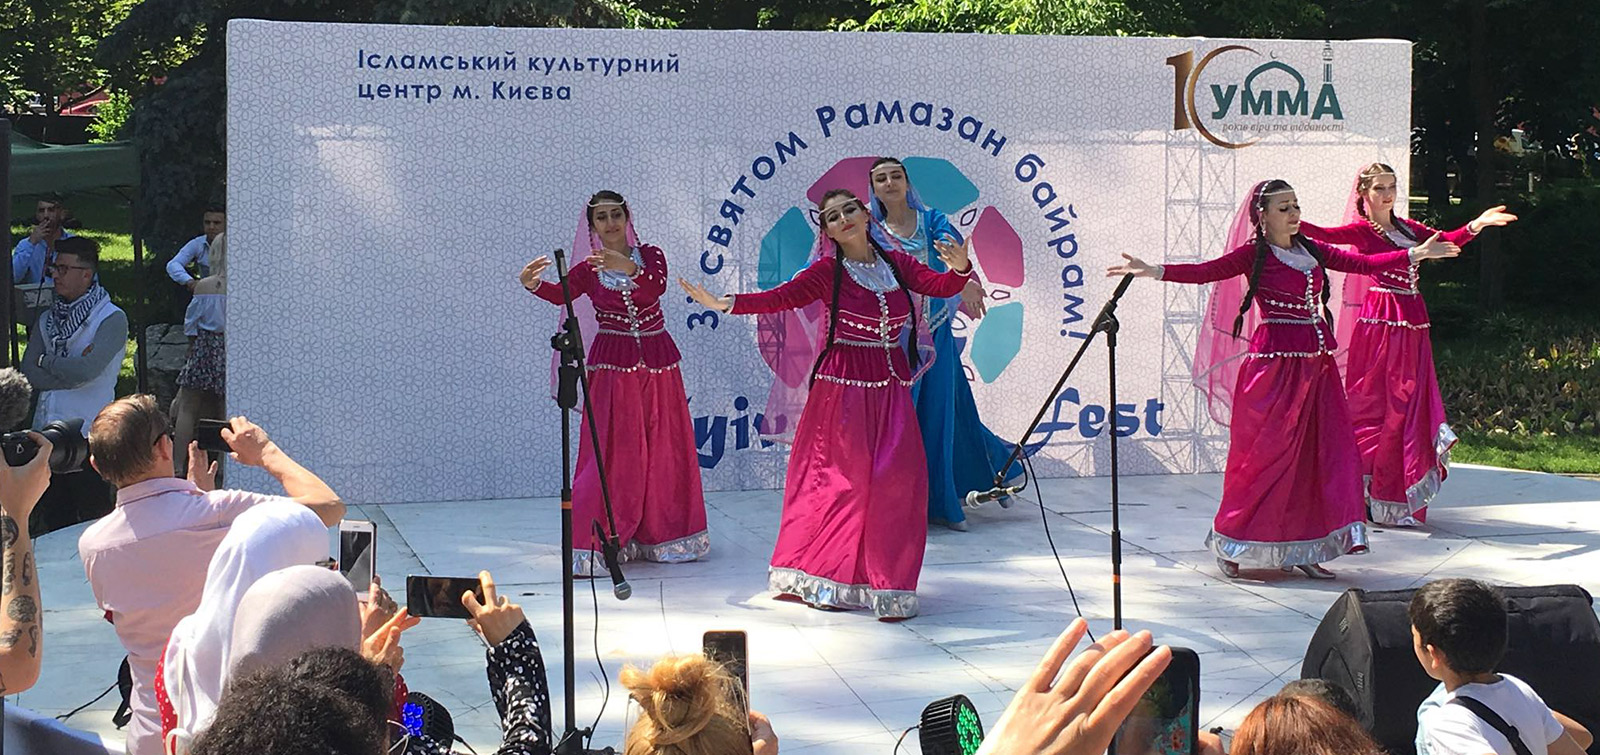 Kiyev və Xarkovdakı festivallarda milli-mədəniyyət nümunələrimiz nümayiş olunub